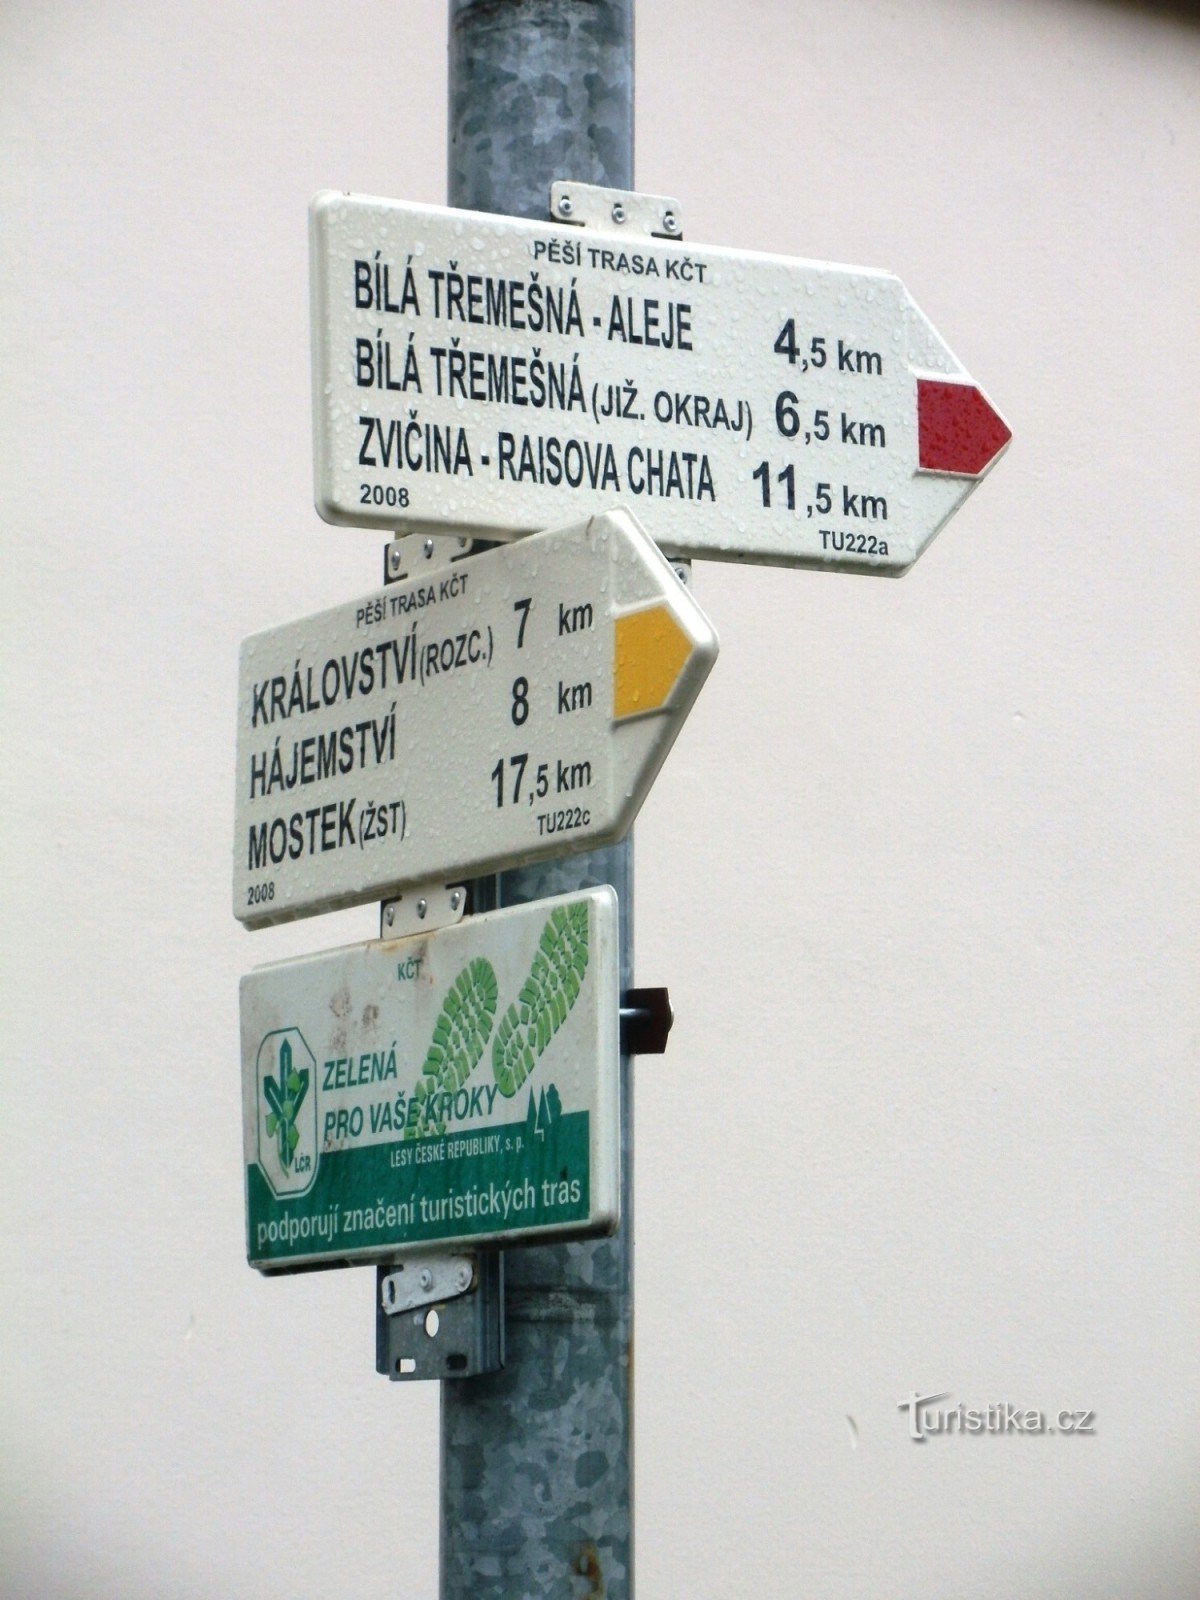 encrucijada turística Dvur Králové - centro